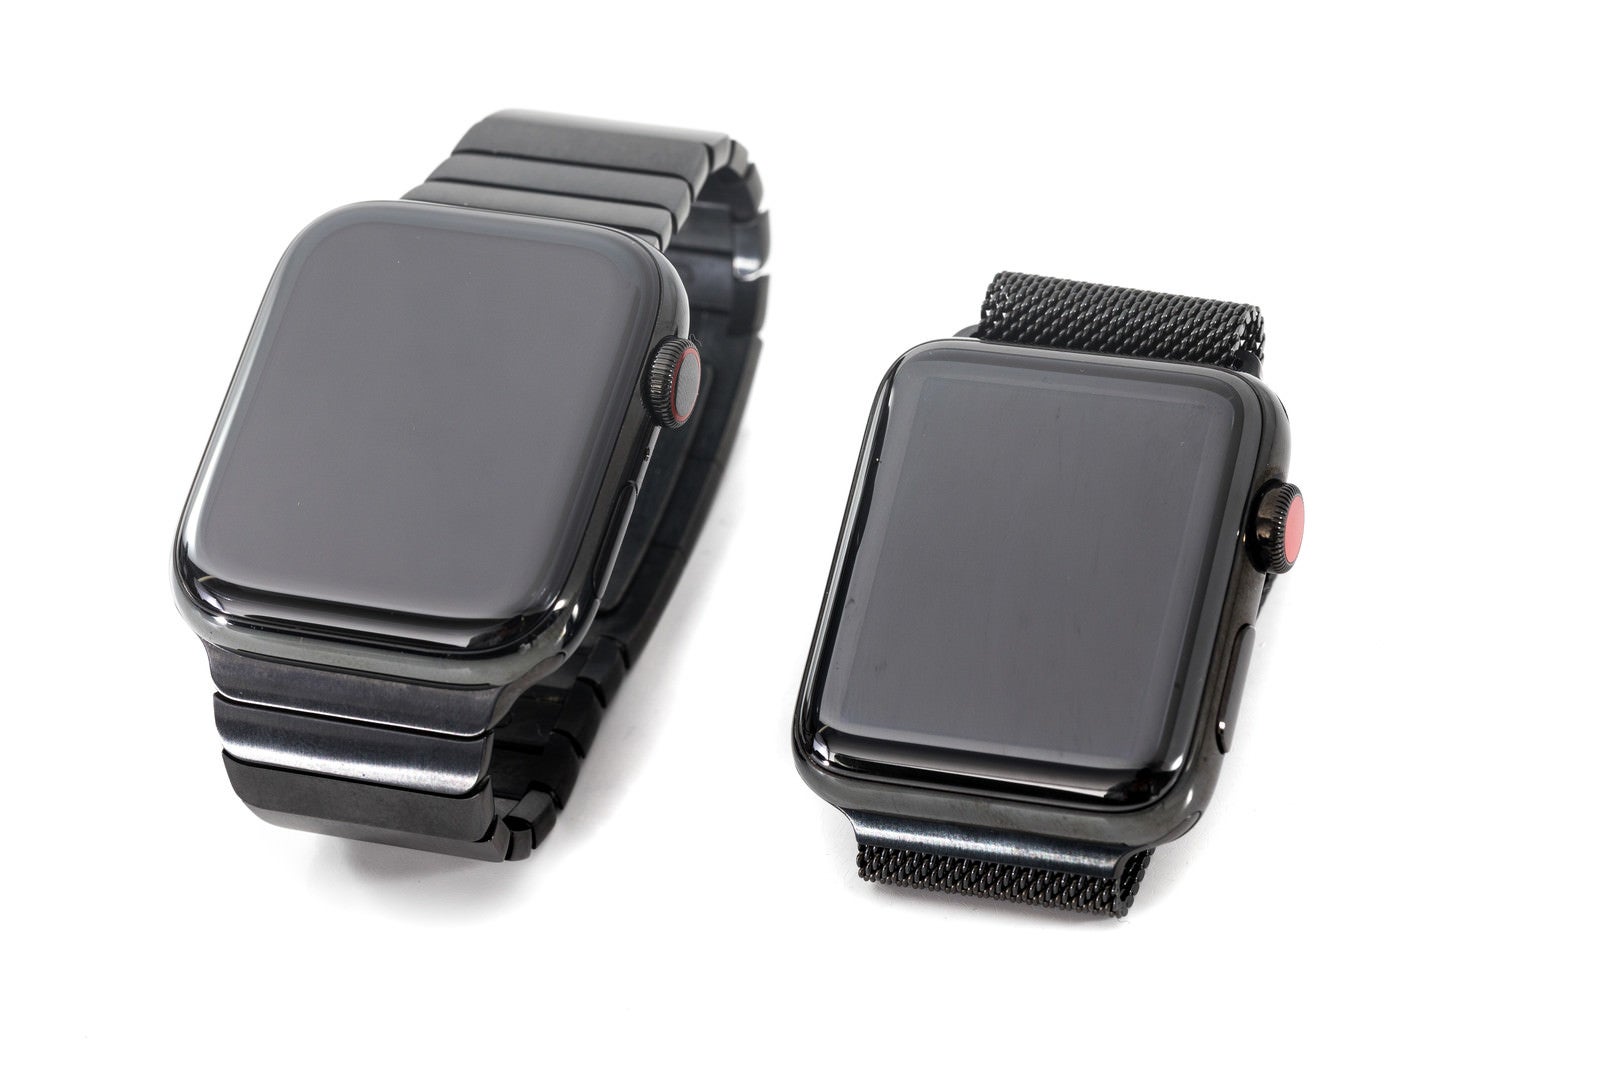 「Apple Watch Series 4 と Apple Watch Series 3」の写真